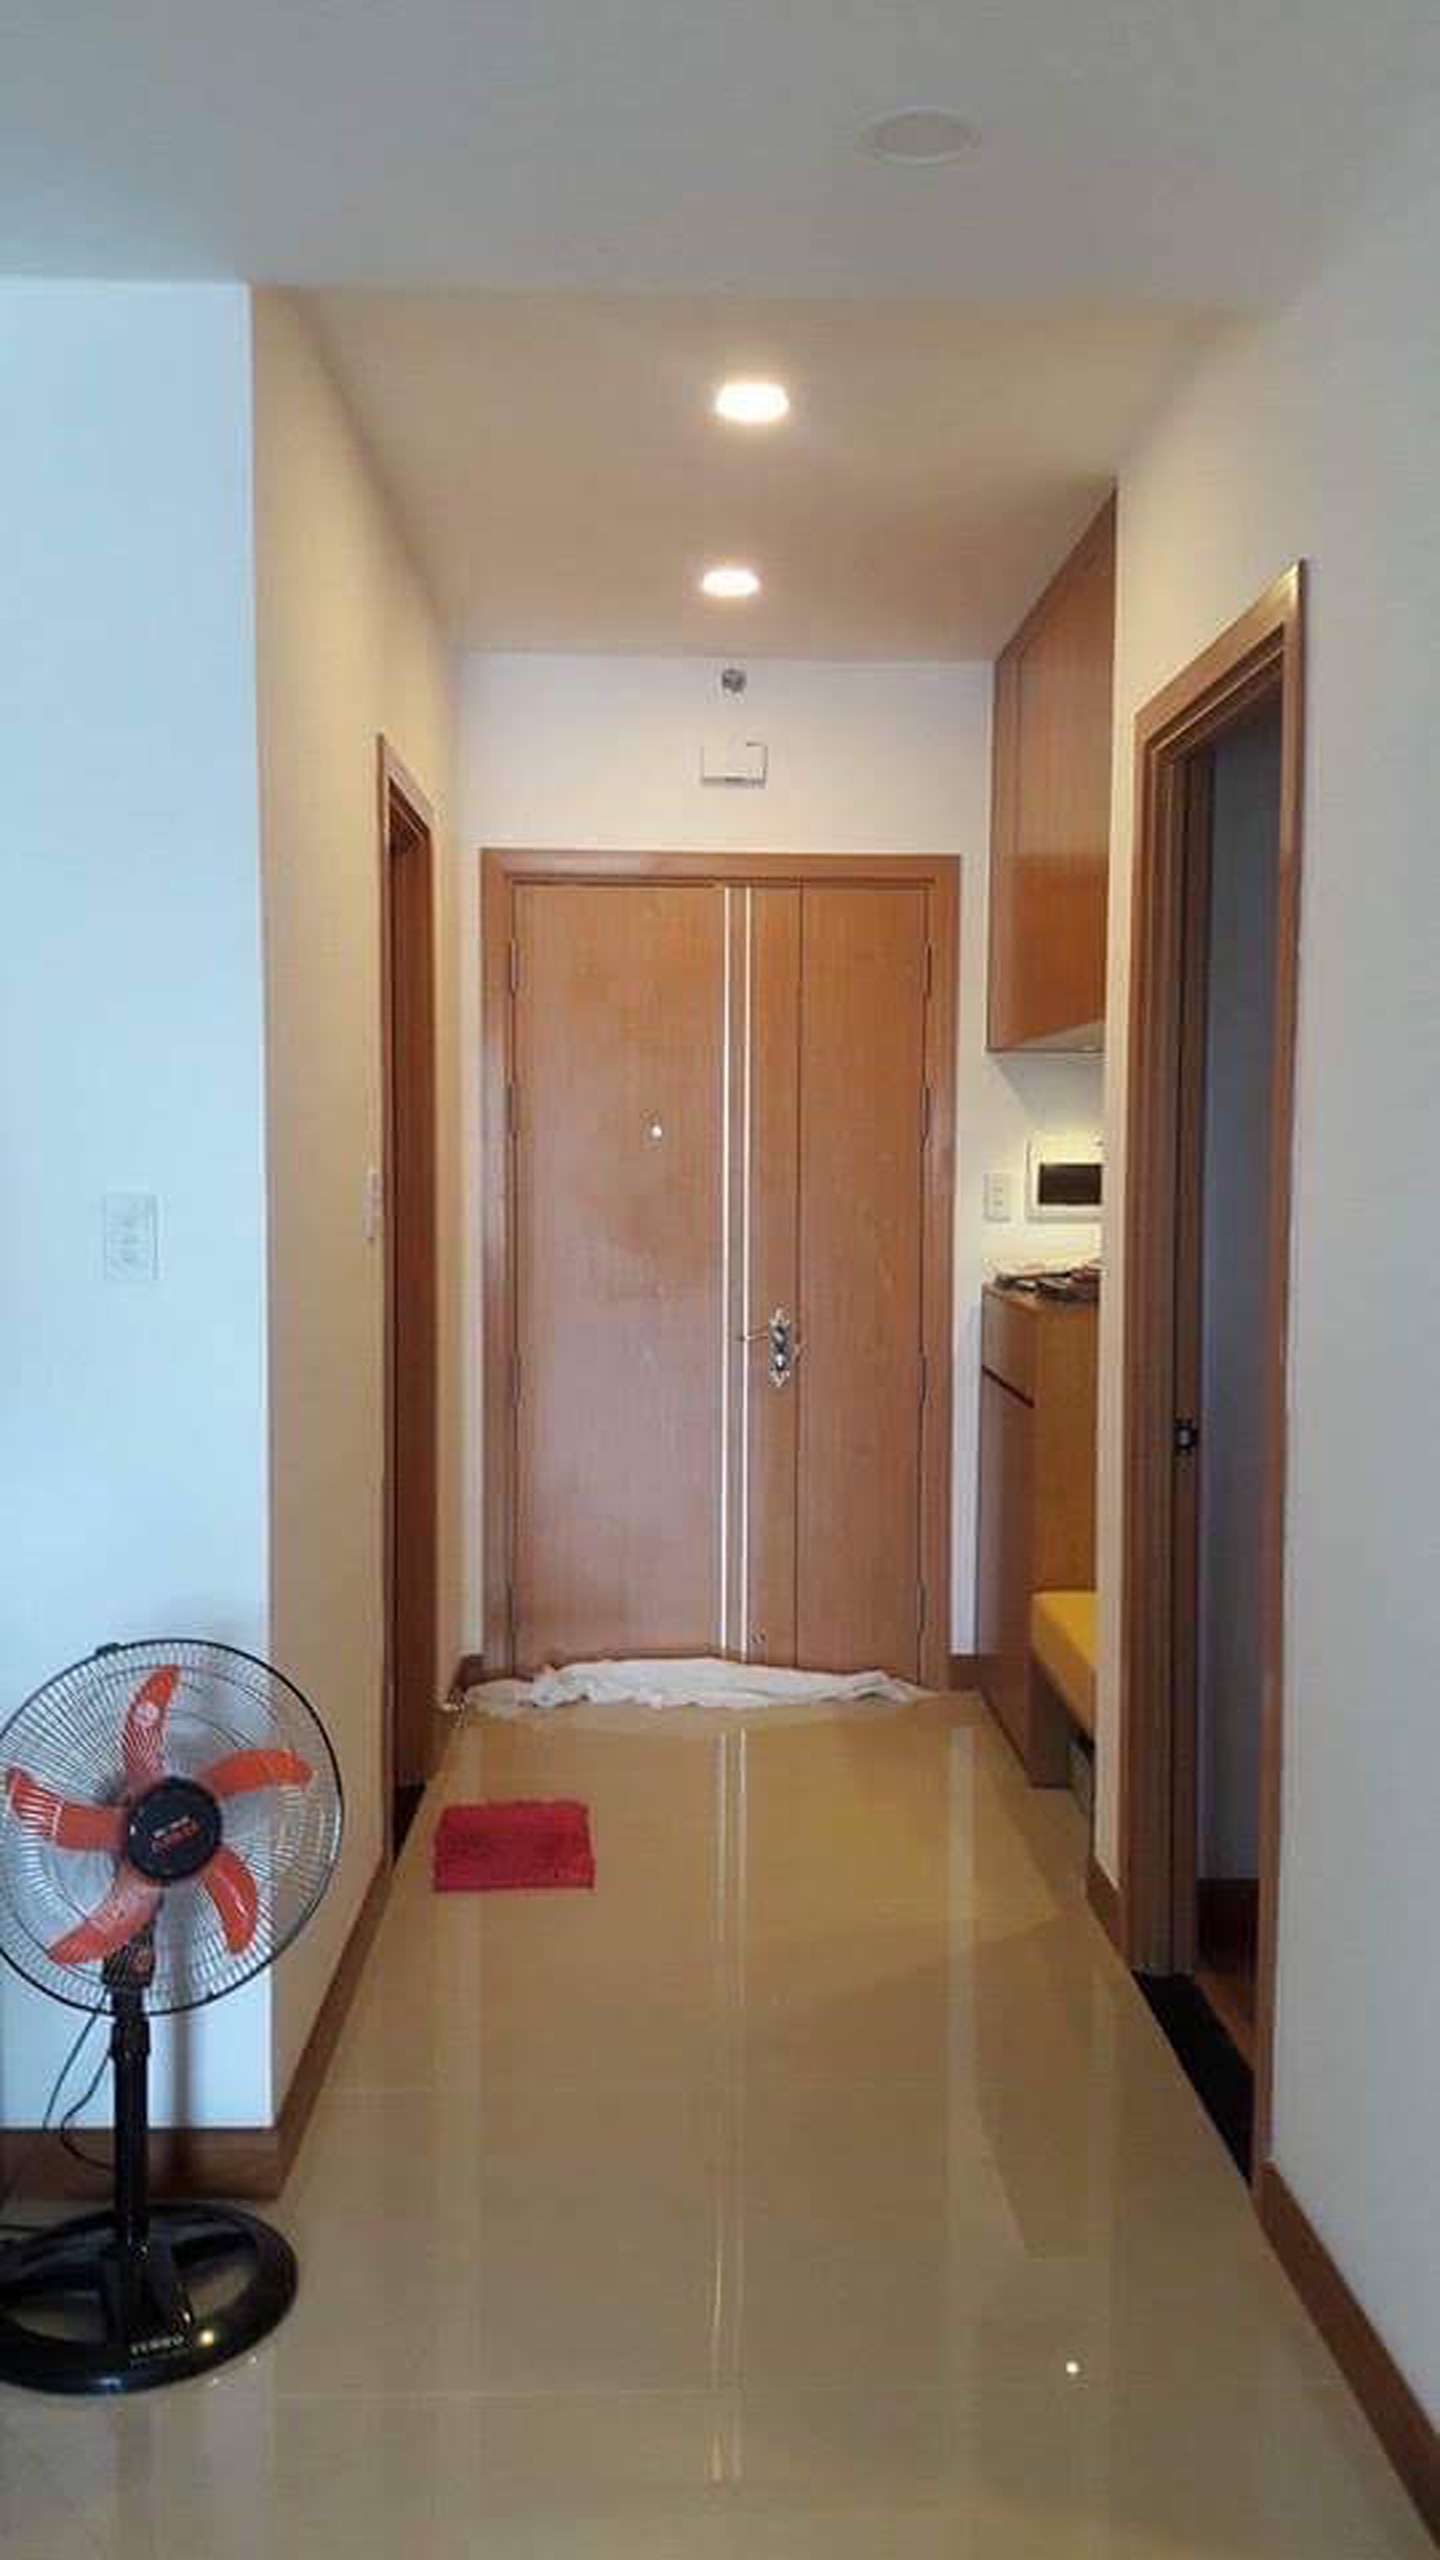 Cho thuê căn hộ Saigonres Plaza 2 phòng ngủ / 2WC full tiện nghi đẹp chỉ #12 Triệu / tháng - Tel 0942.811.343 Tony (Zalo/Phone)